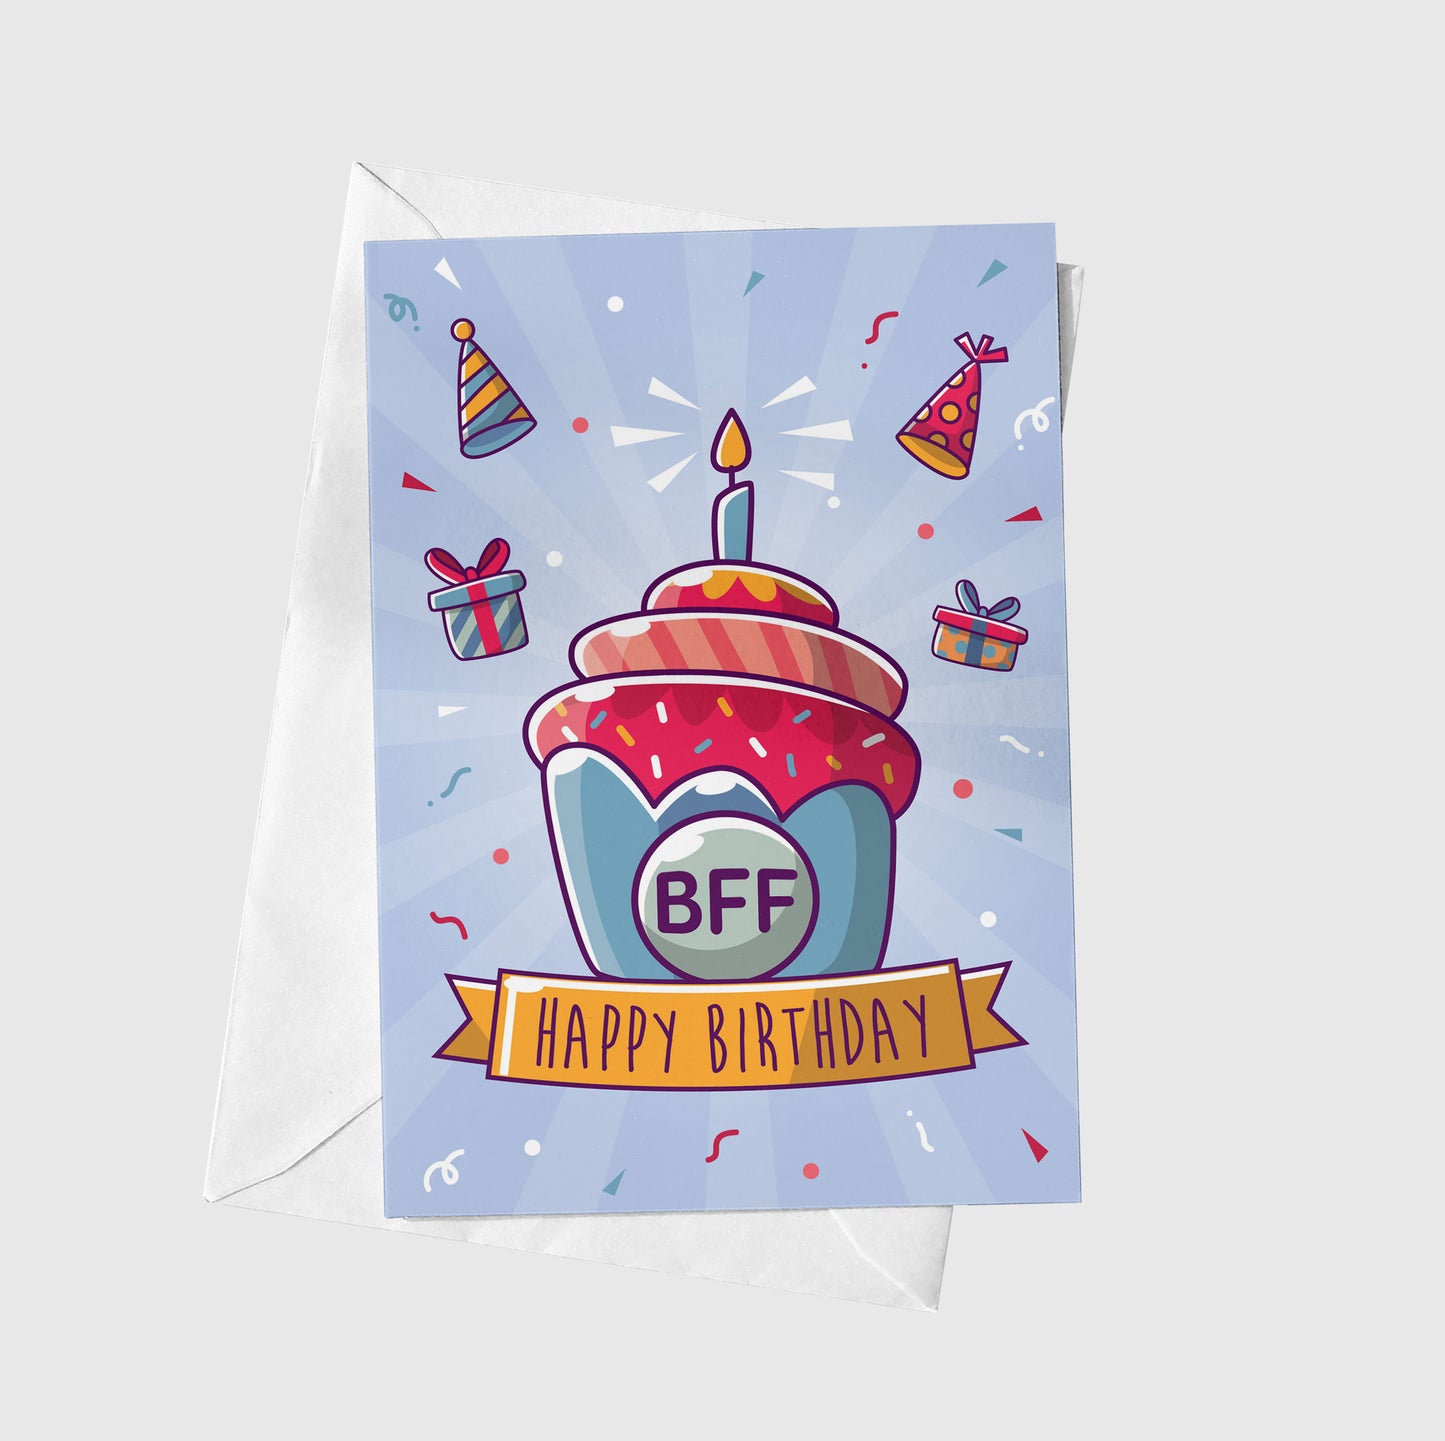 BFF - Happy Birthday